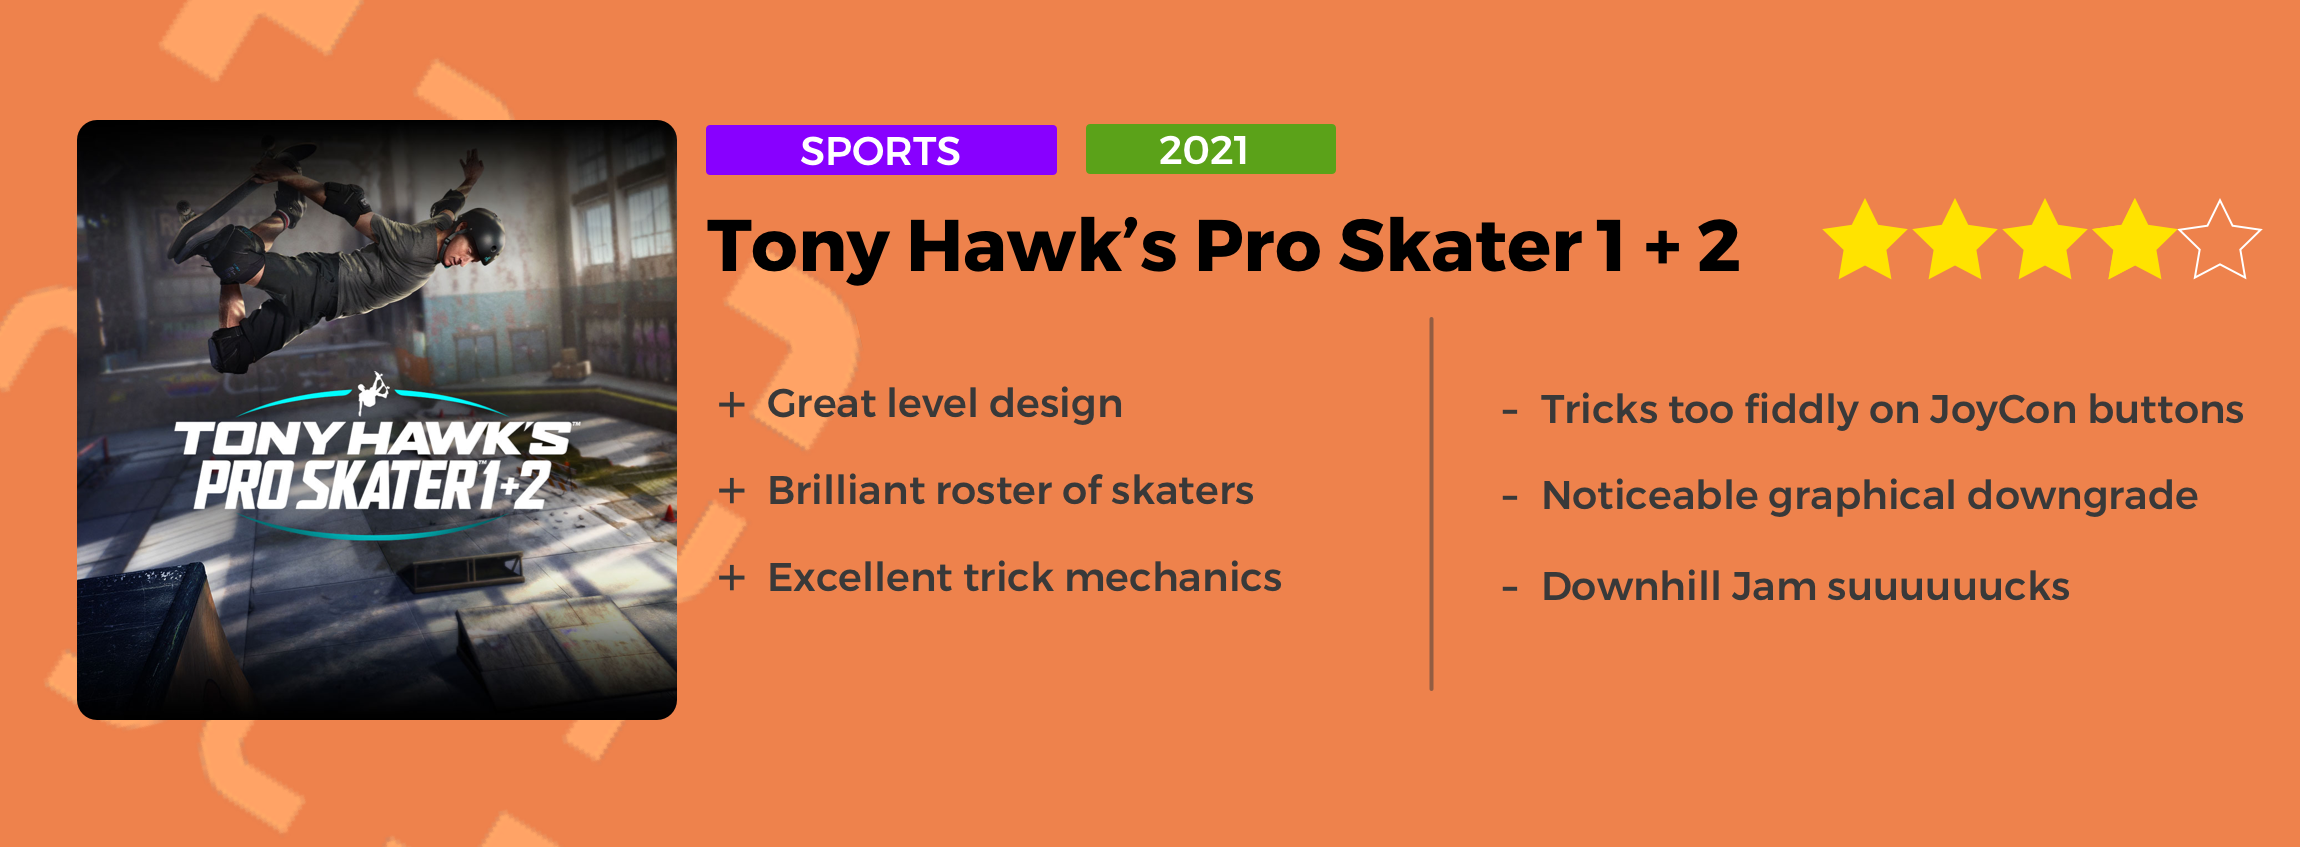 Tony Hawk’s Pro Skater 1 + 2 - Scoreboard